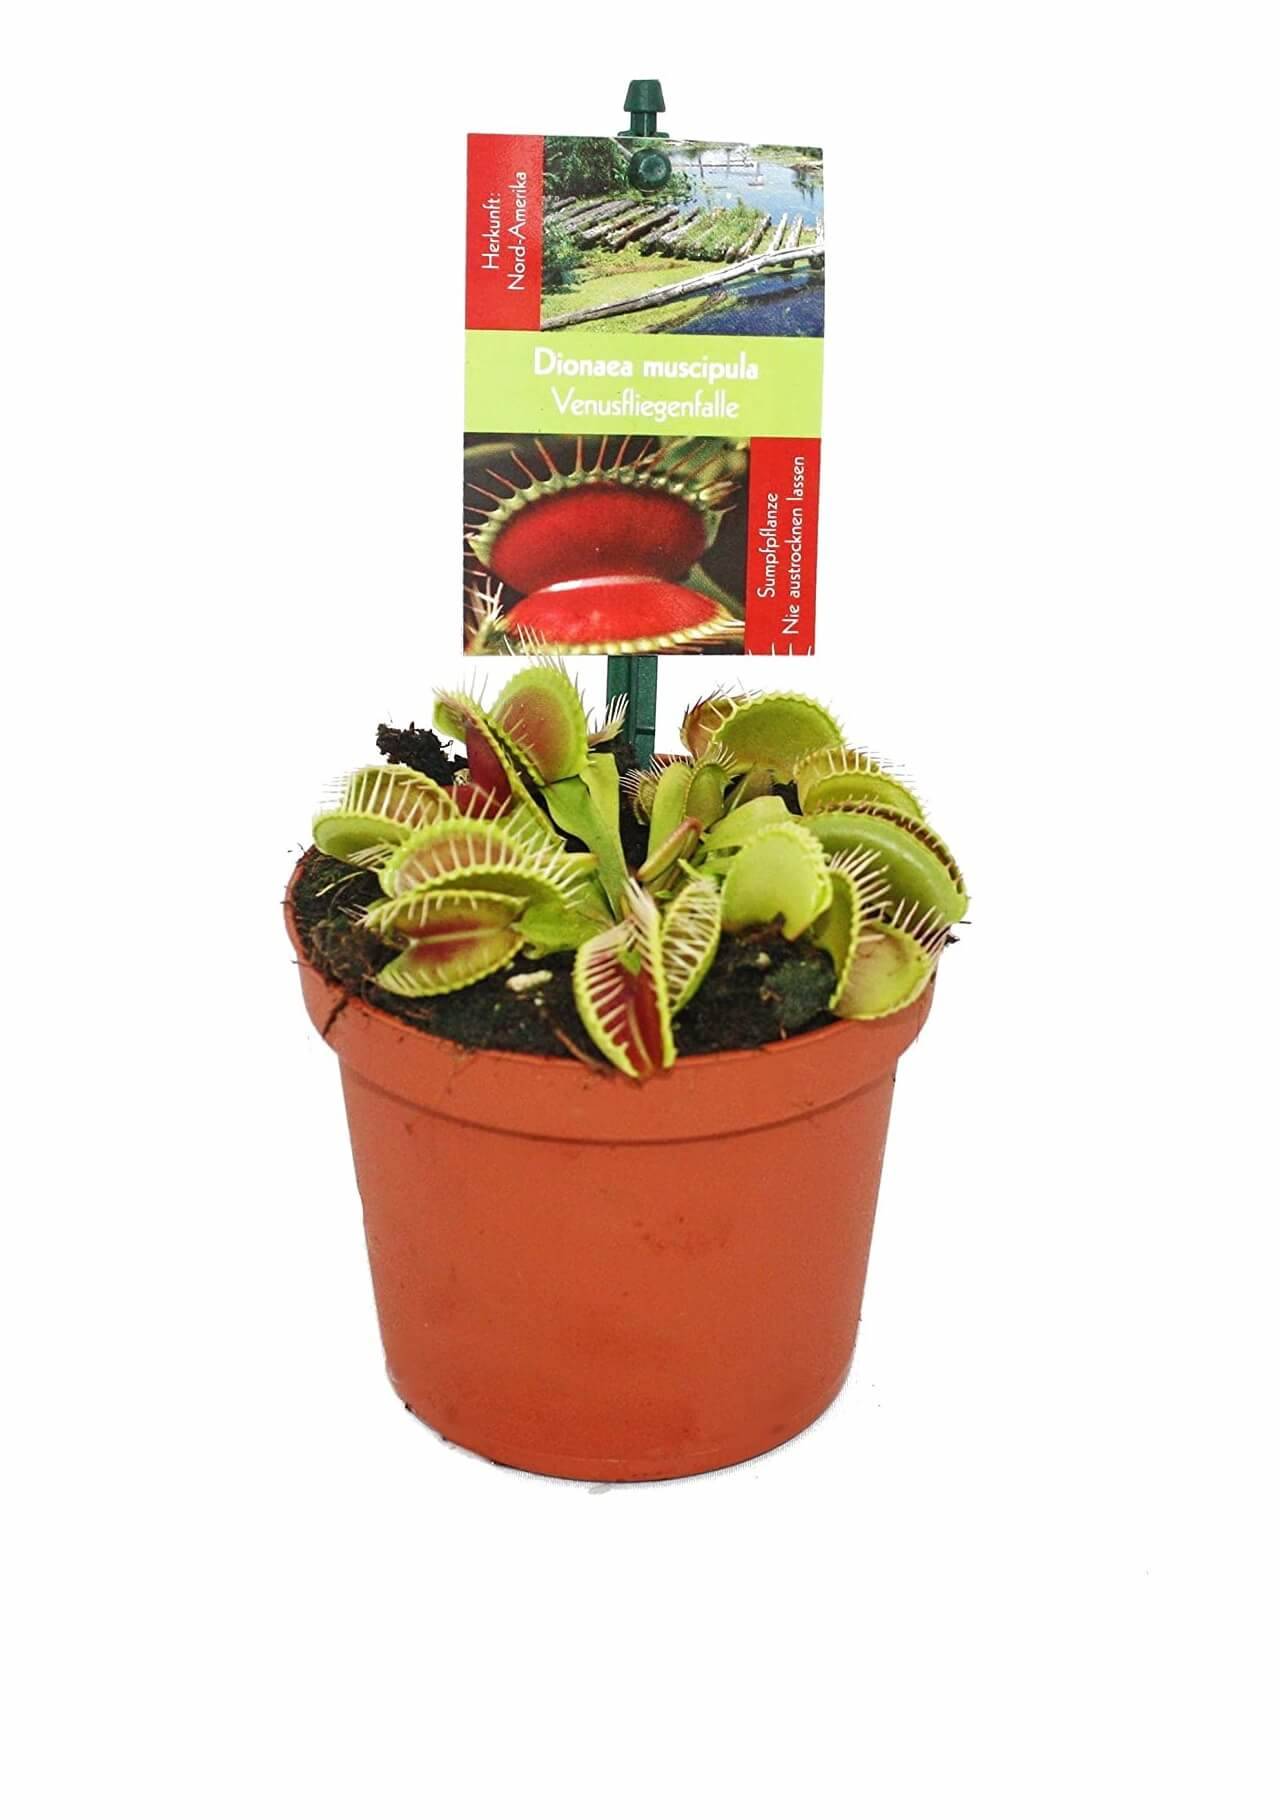 Plantas carnívoras Dionaea muscipula Amazon, 5,99€